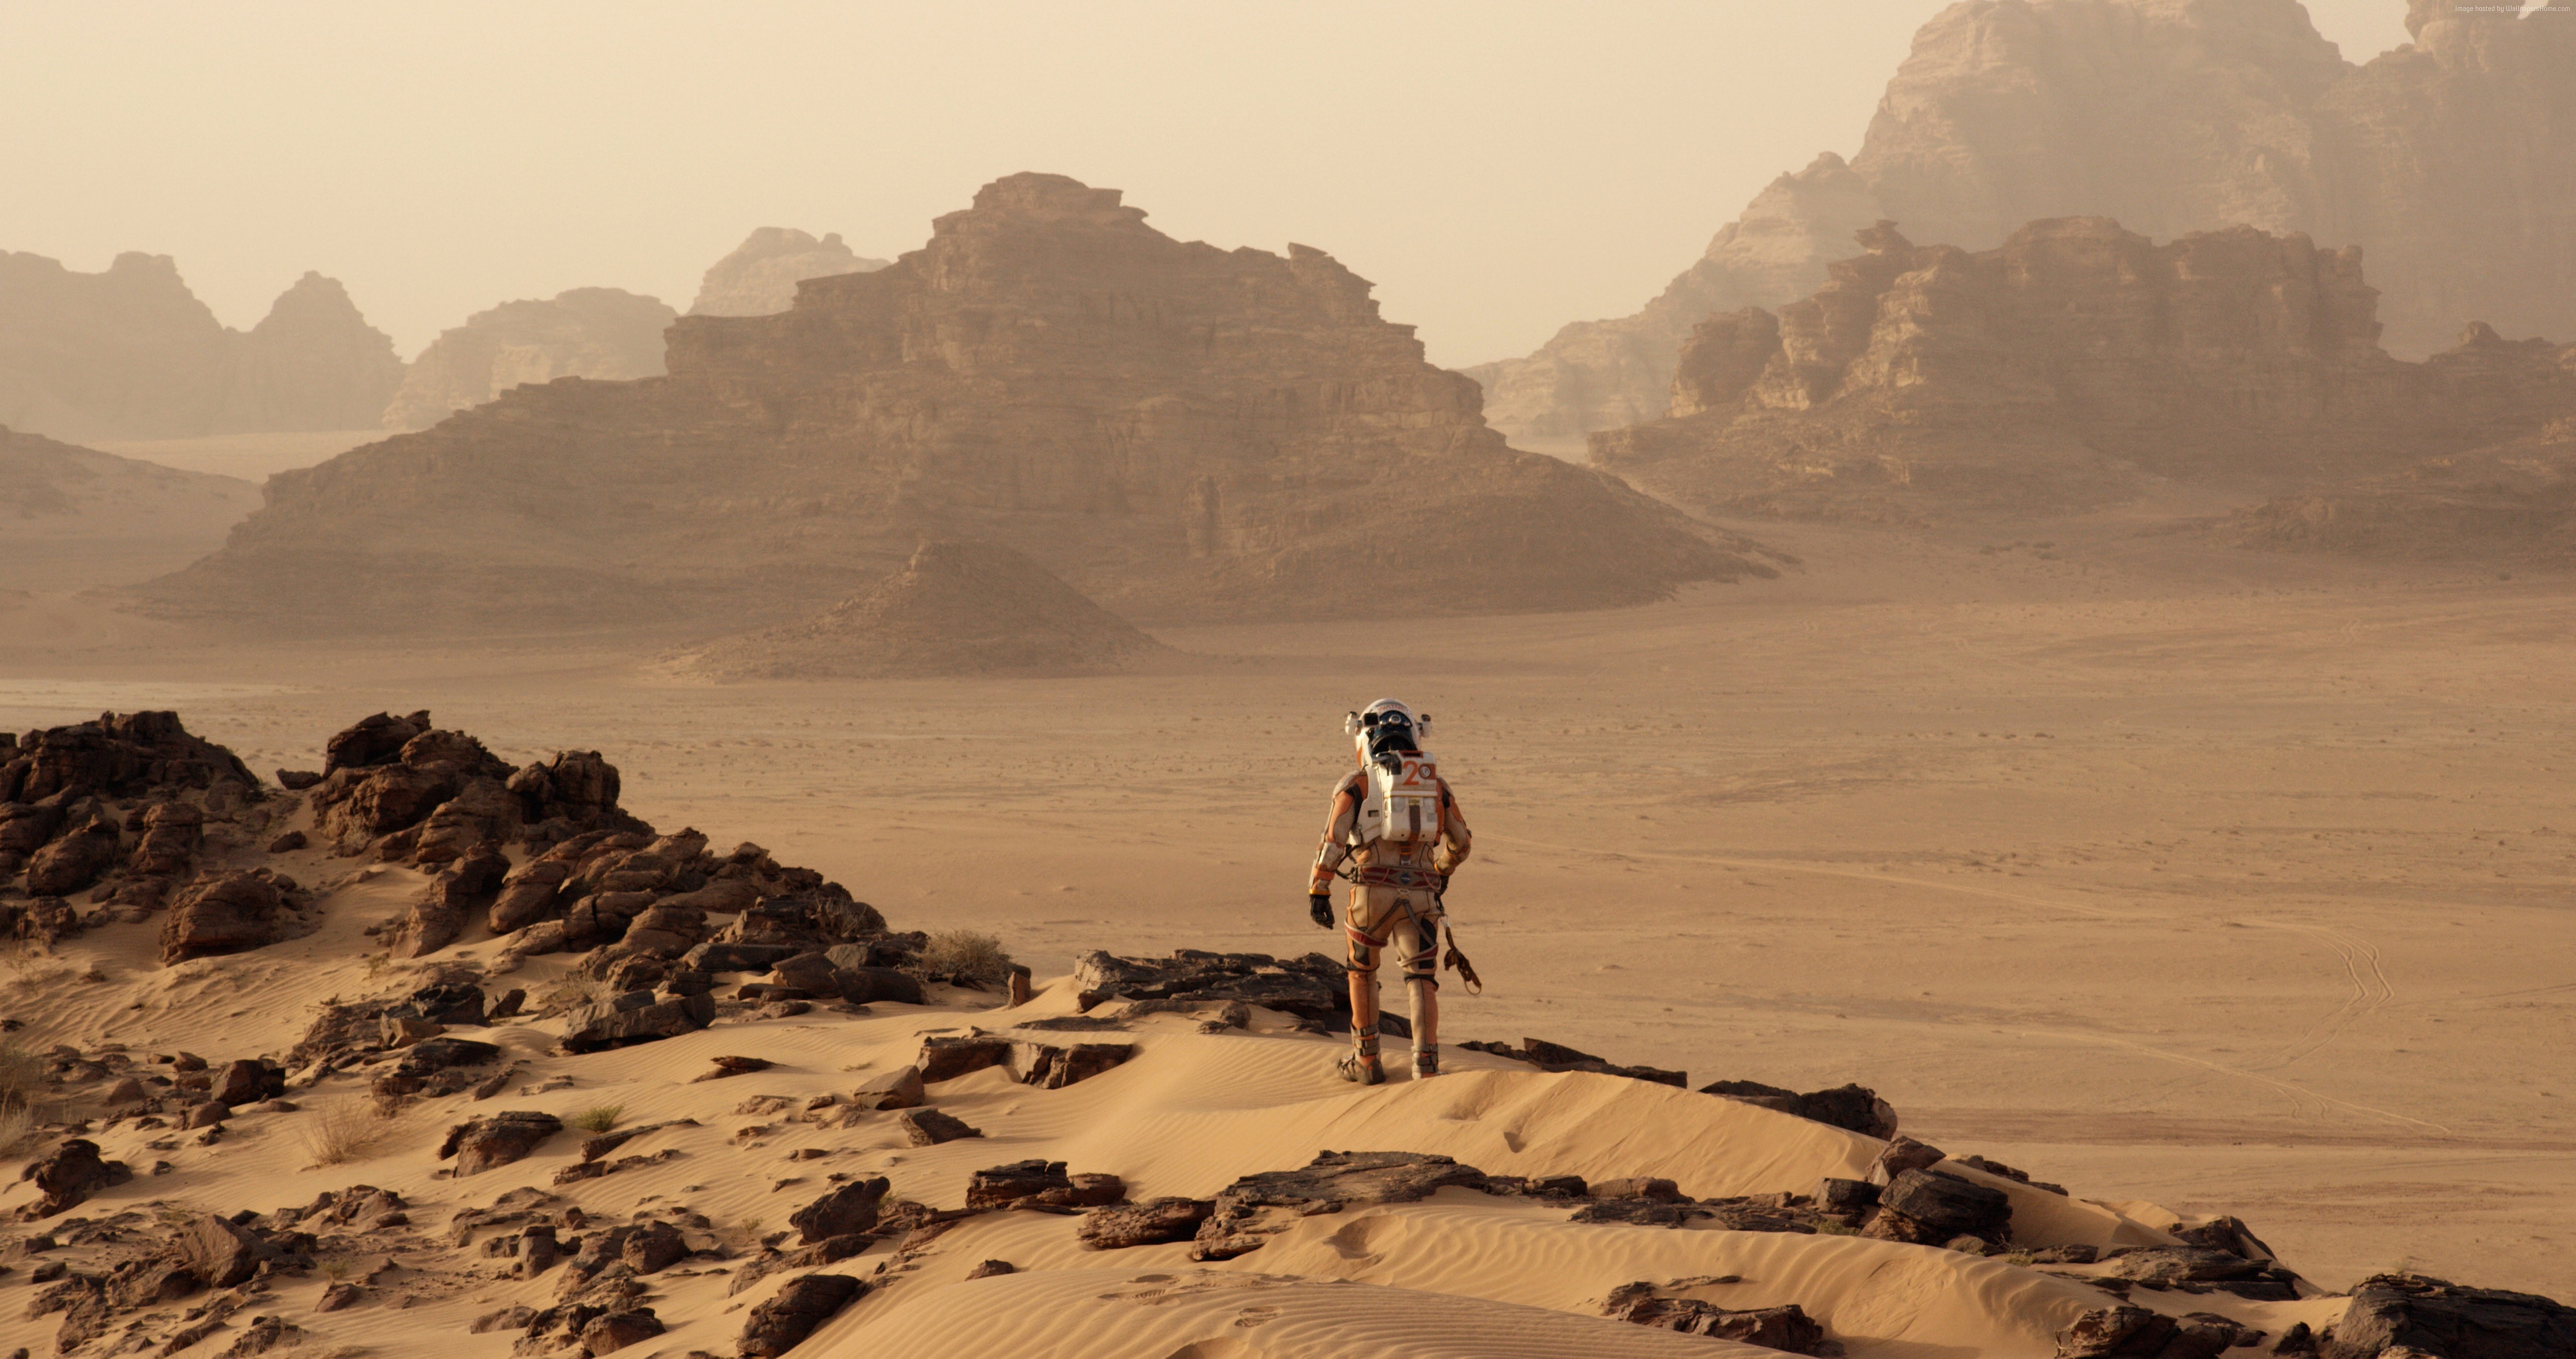 Los mejores fondos de pantalla de Marte (The Martian) para la pantalla del teléfono